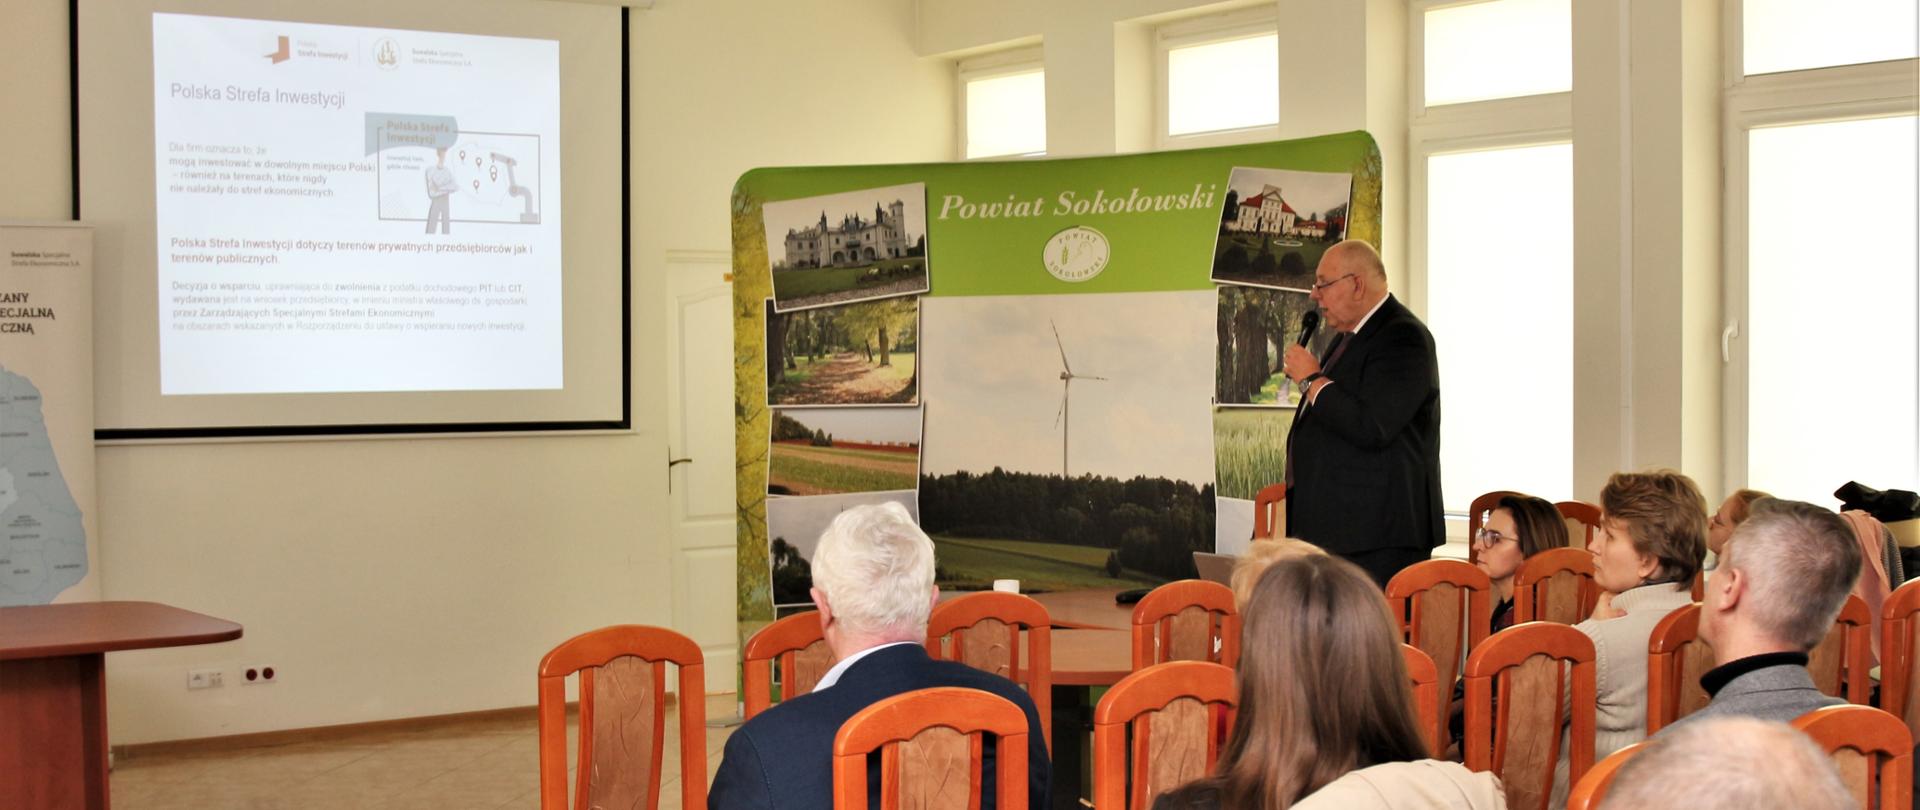 Na fotografii jest przedstawiony Prezes Zarządu SSSE S. A. Leszek Dec. który wyjaśnia czym jest Polska Strefa Inwestycji. W tle widać ściankę Powiatu Sokołowskiego oraz slajd wyświetlany przez projektor. Po prawej stronie zgromadzeni ludzie.